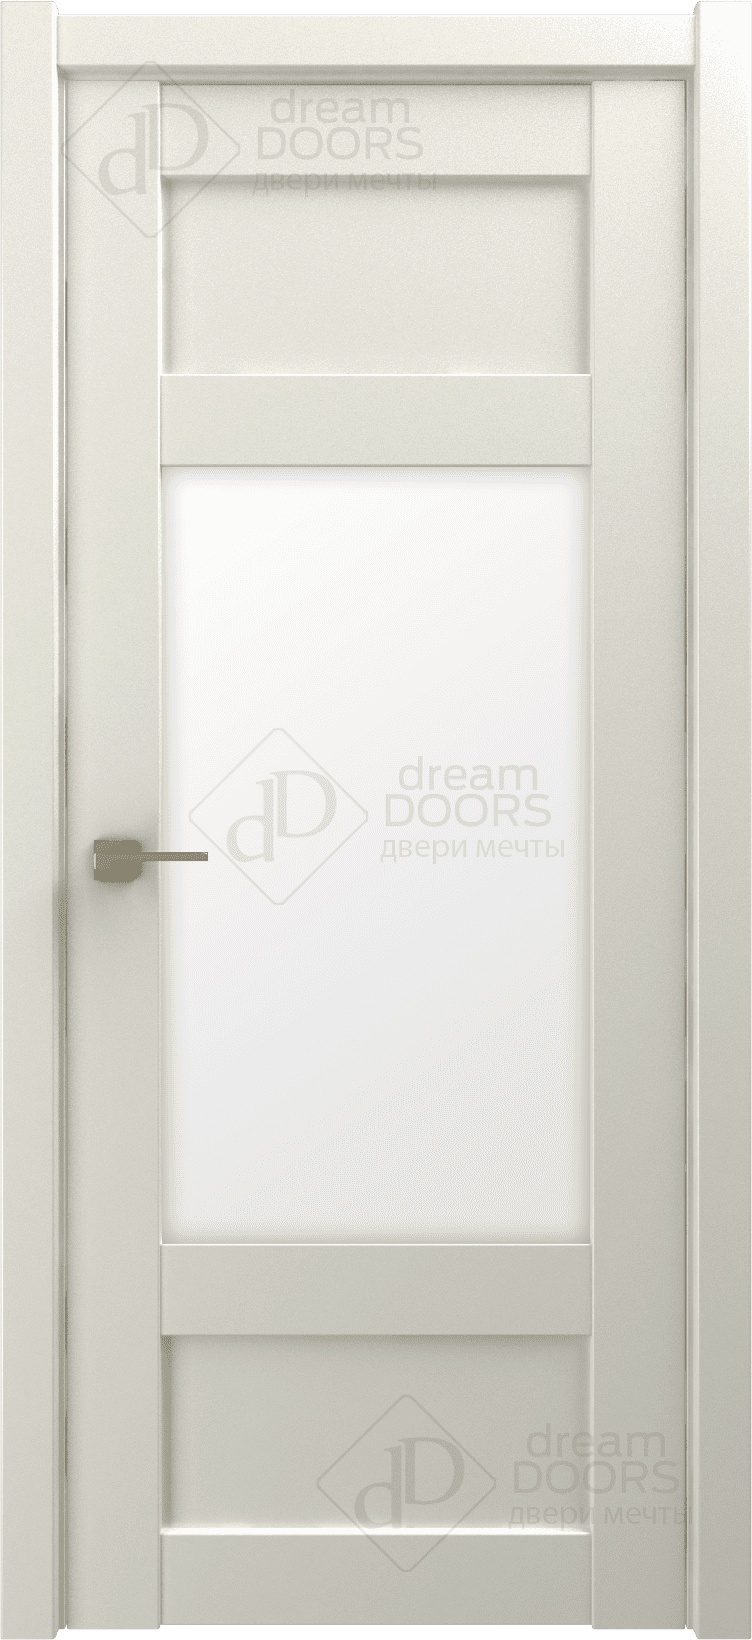 Dream Doors Межкомнатная дверь G23, арт. 18250 - фото №3